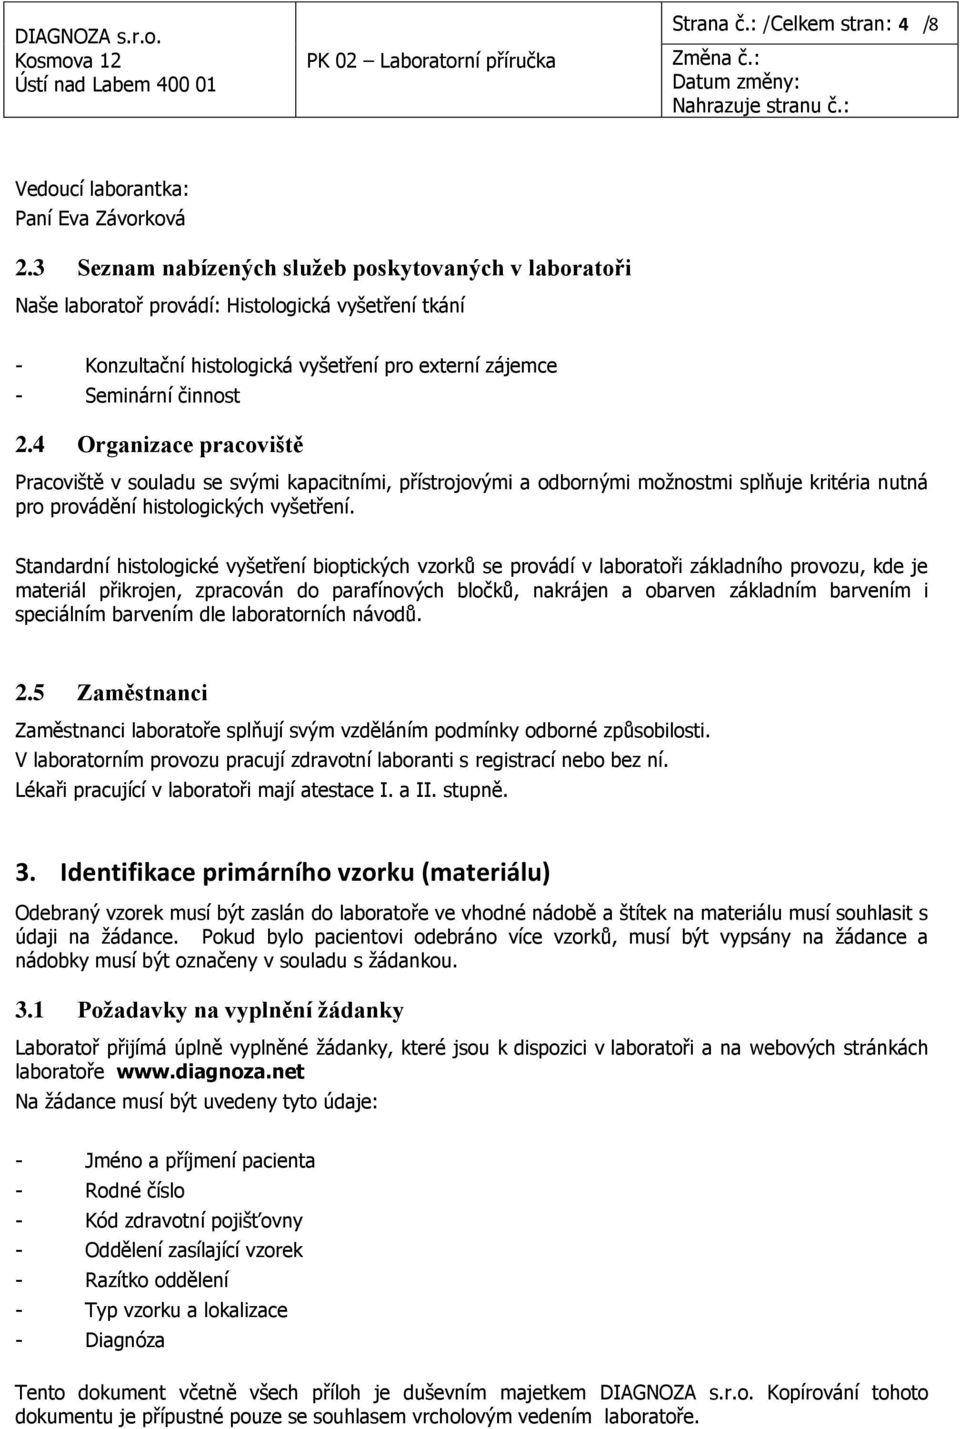 4 Organizace pracoviště Pracoviště v souladu se svými kapacitními, přístrojovými a odbornými moţnostmi splňuje kritéria nutná pro provádění histologických vyšetření.